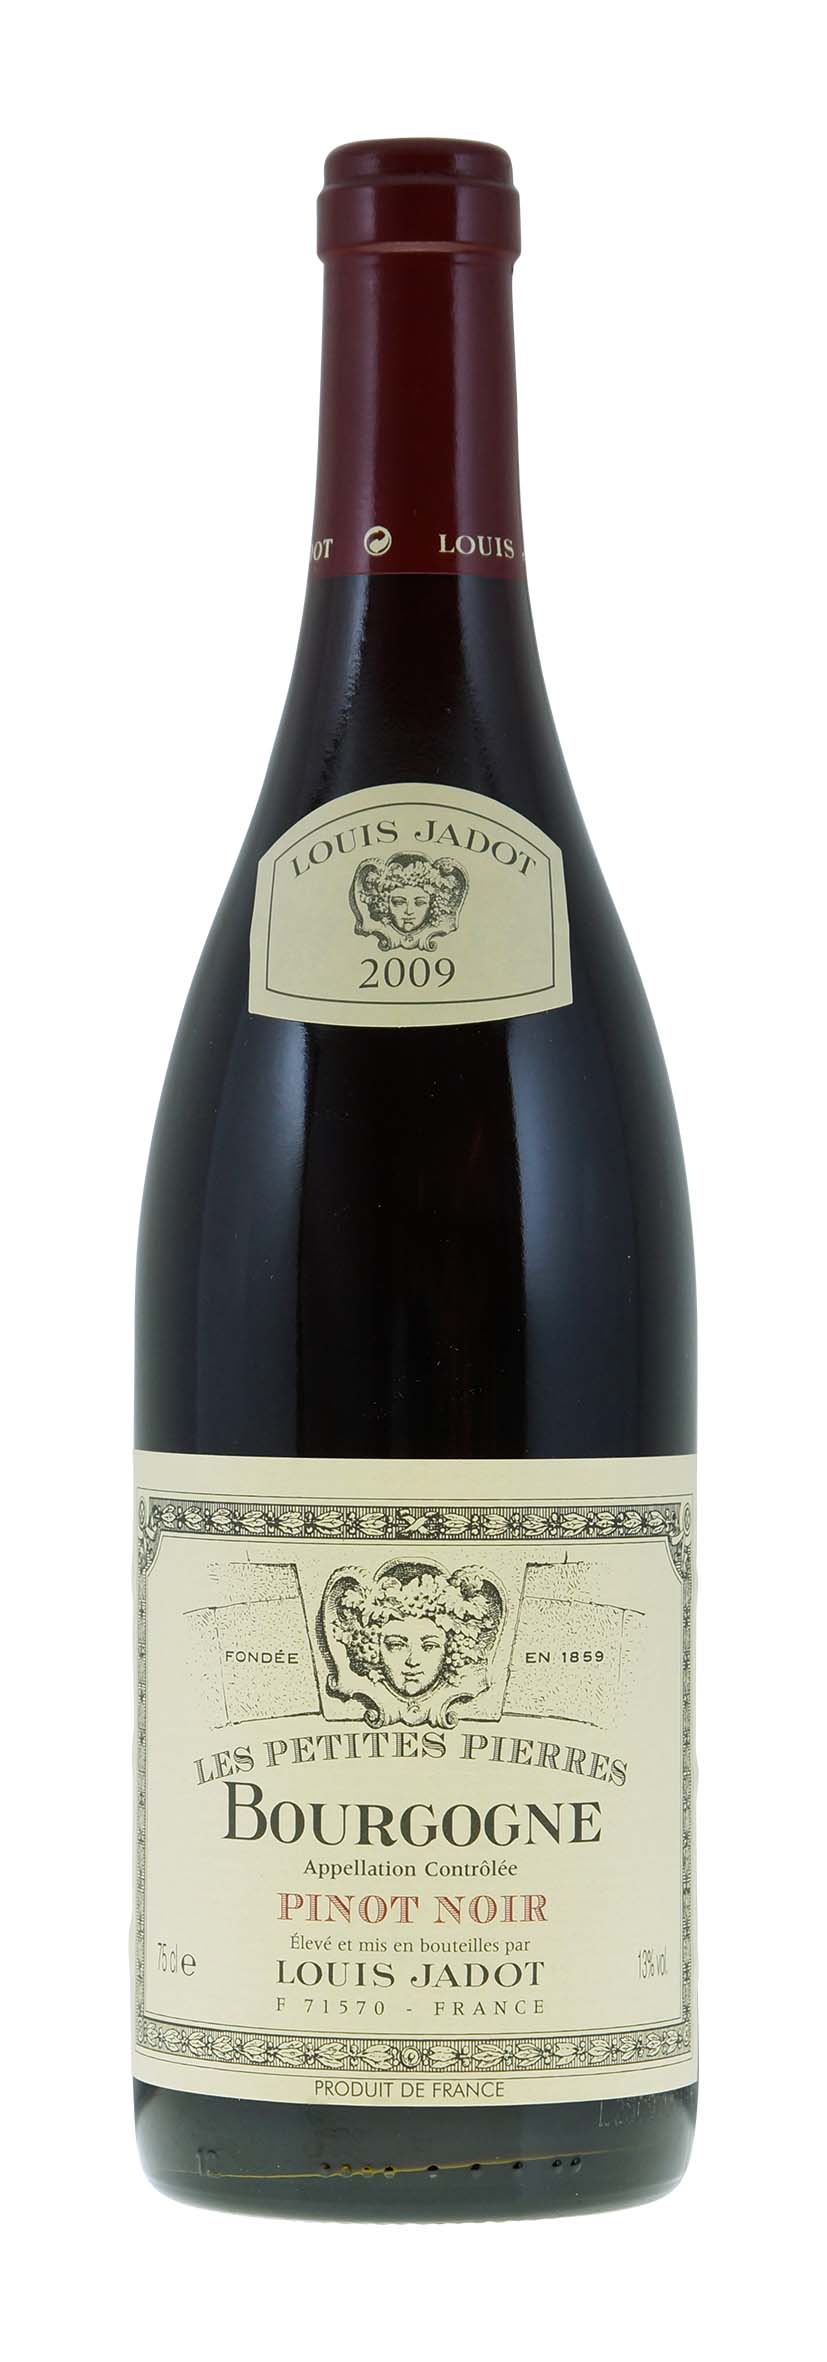 Bourgogne AOC Pinot Noir Les Petites Pierres 2009